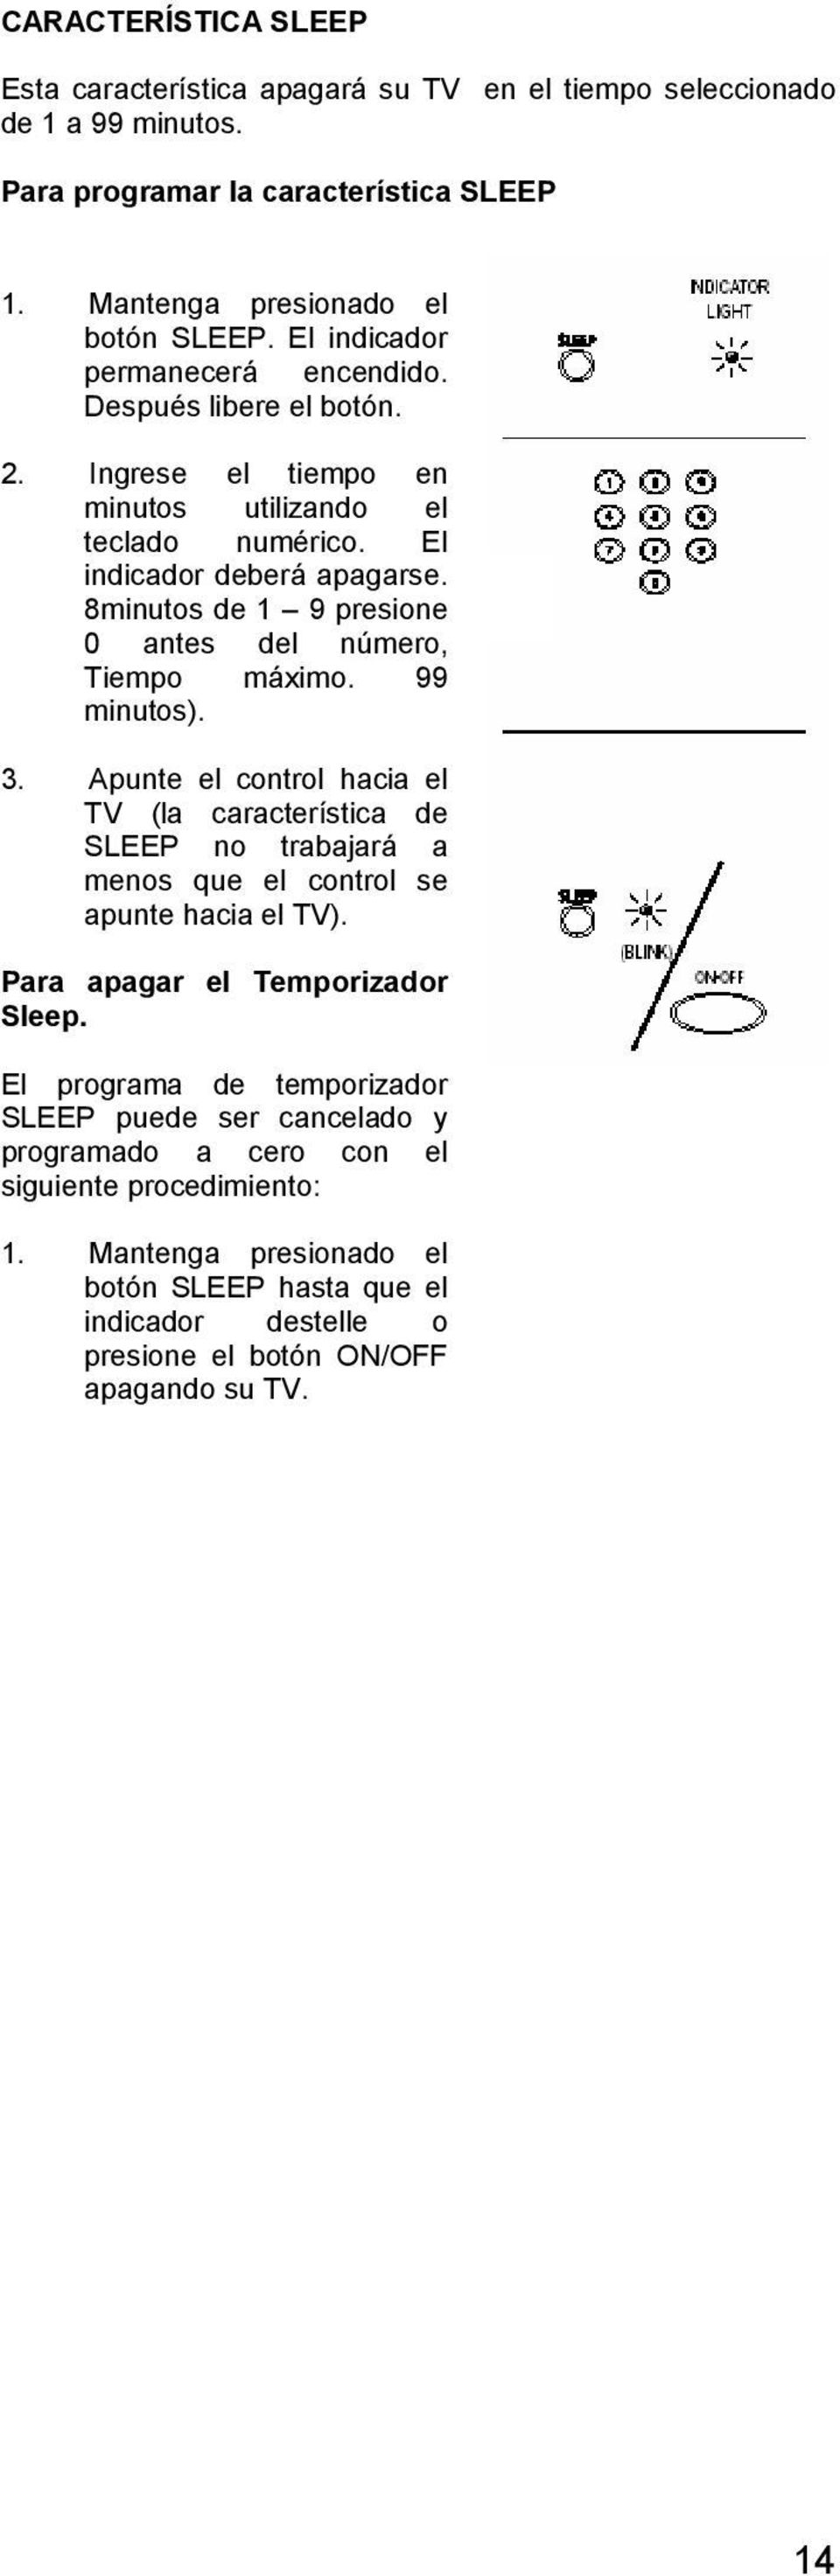 8minutos de 1 9 presione 0 antes del número, Tiempo máximo. 99 minutos). 3. Apunte el control hacia el TV (la característica de SLEEP no trabajará a menos que el control se apunte hacia el TV).